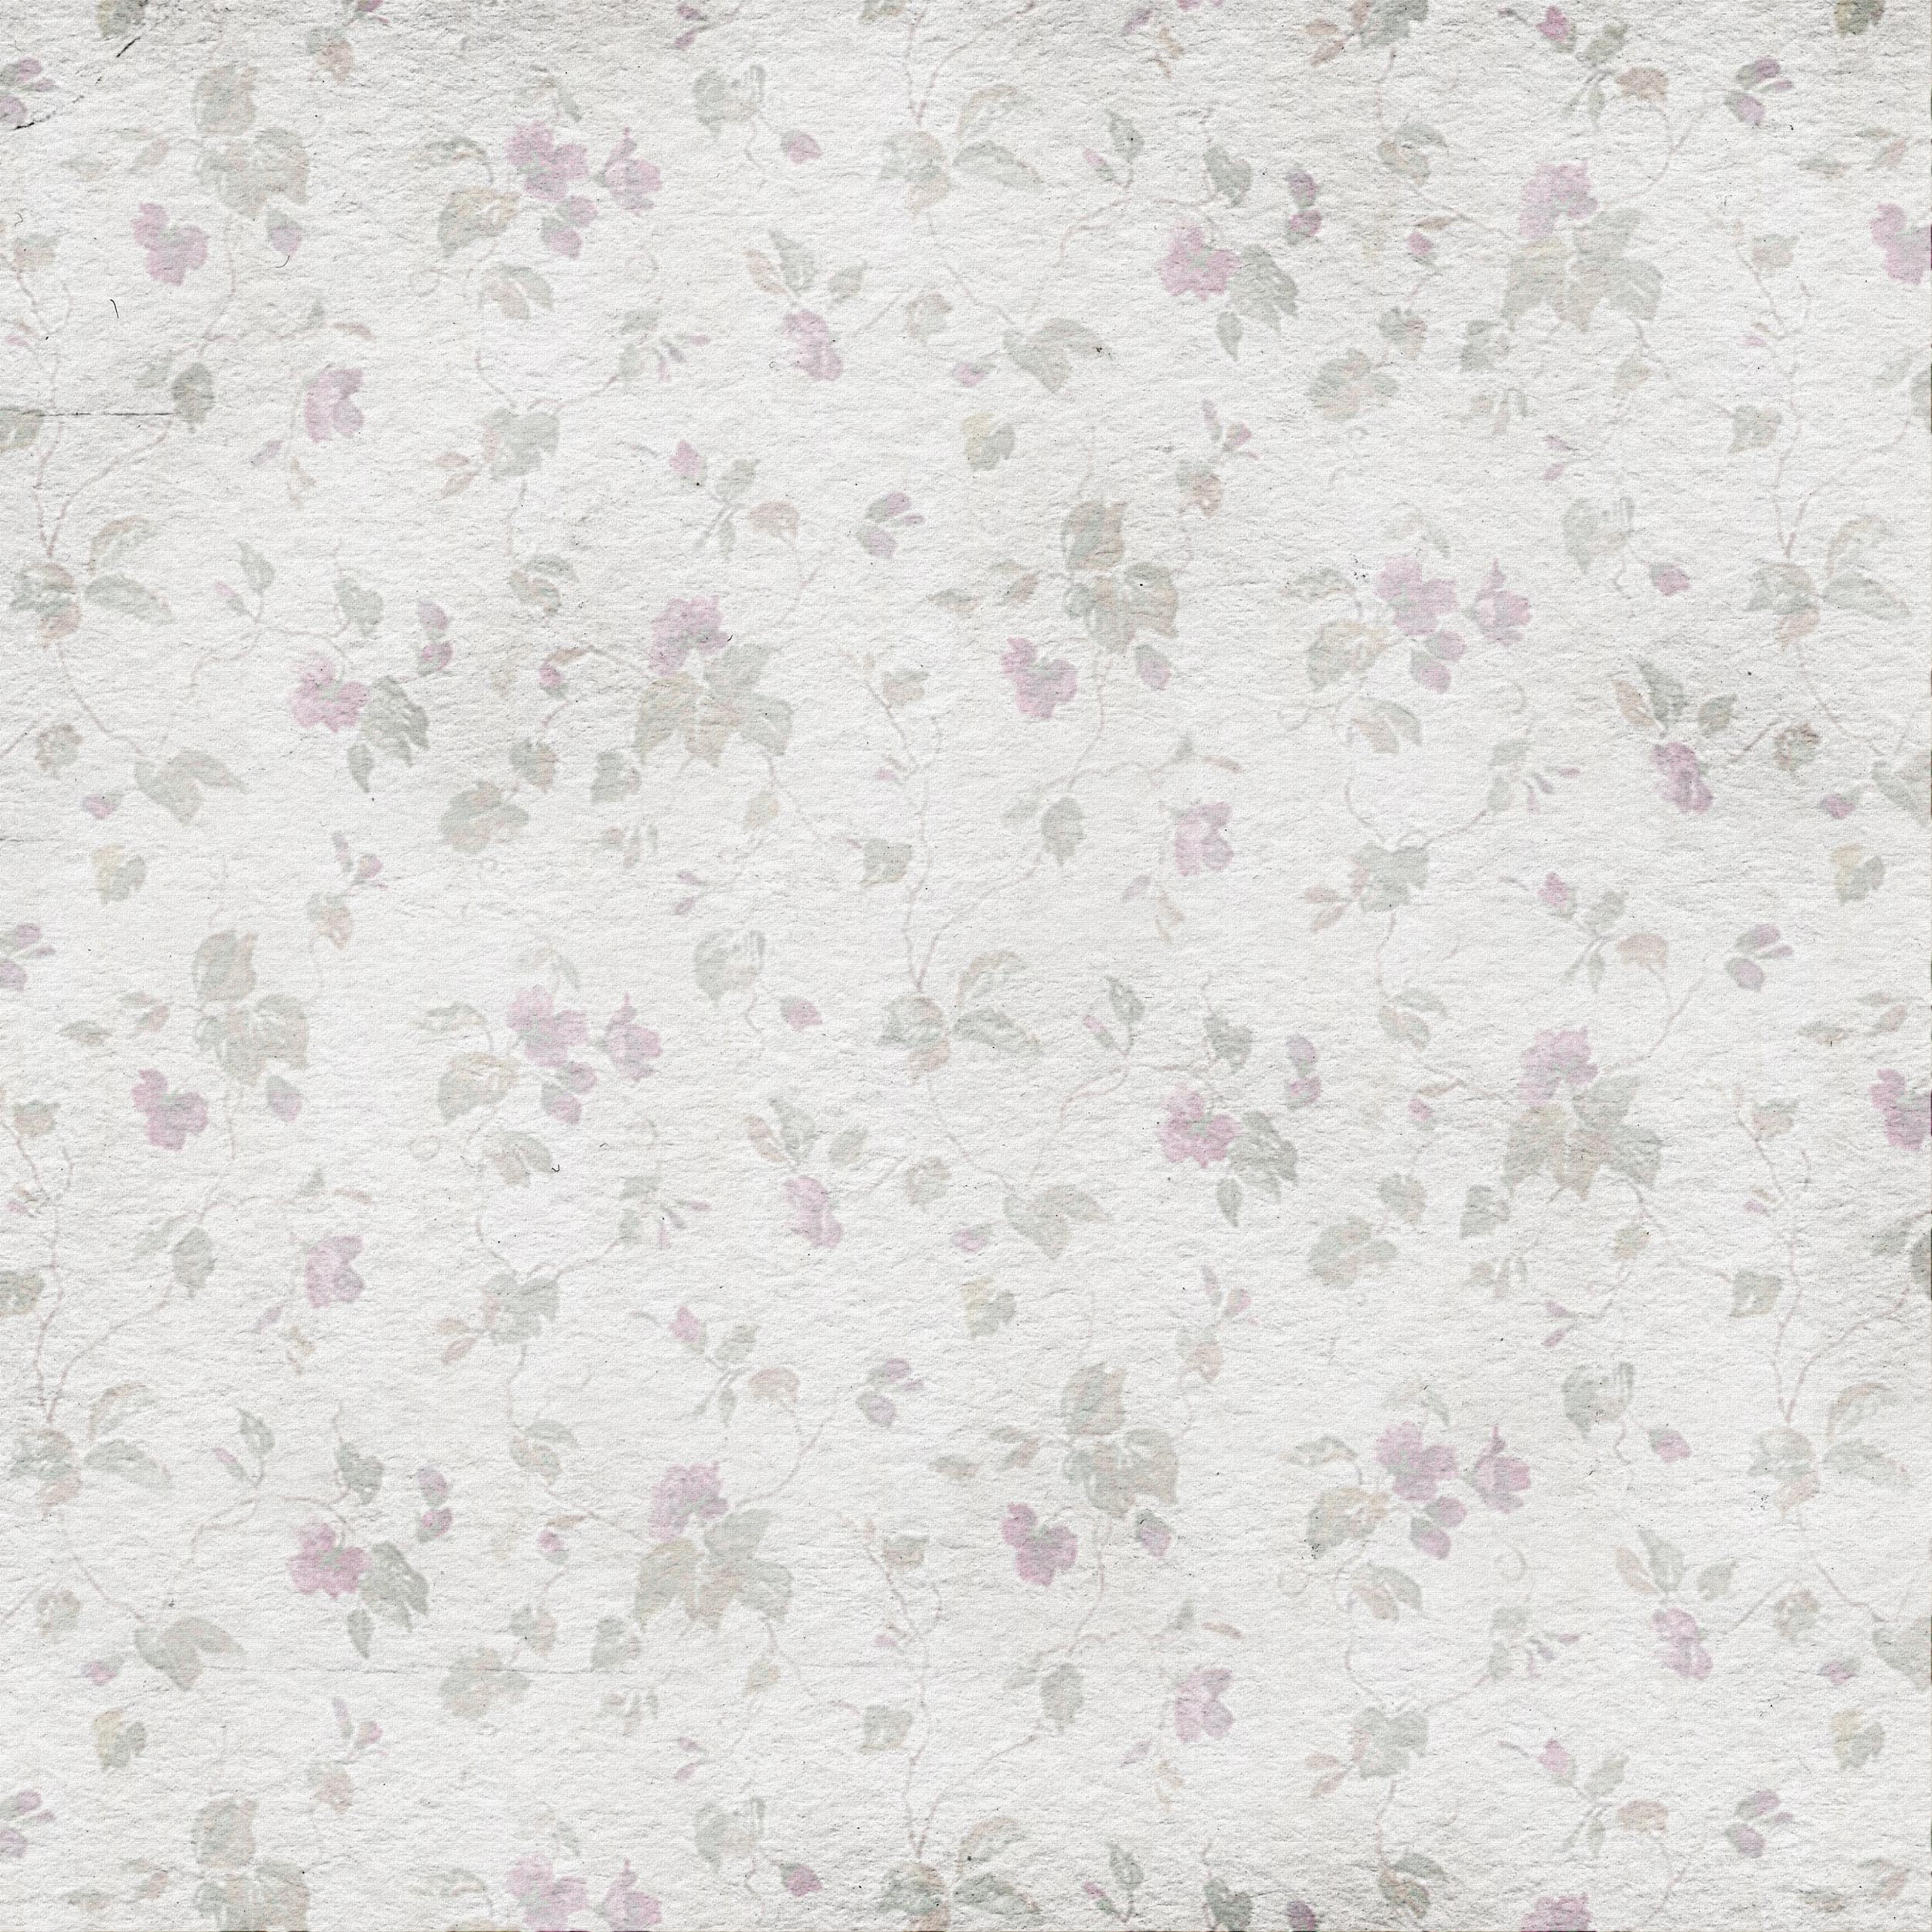 壁紙 背景イラスト 花の模様 柄 パターン No 247 シック 布生地